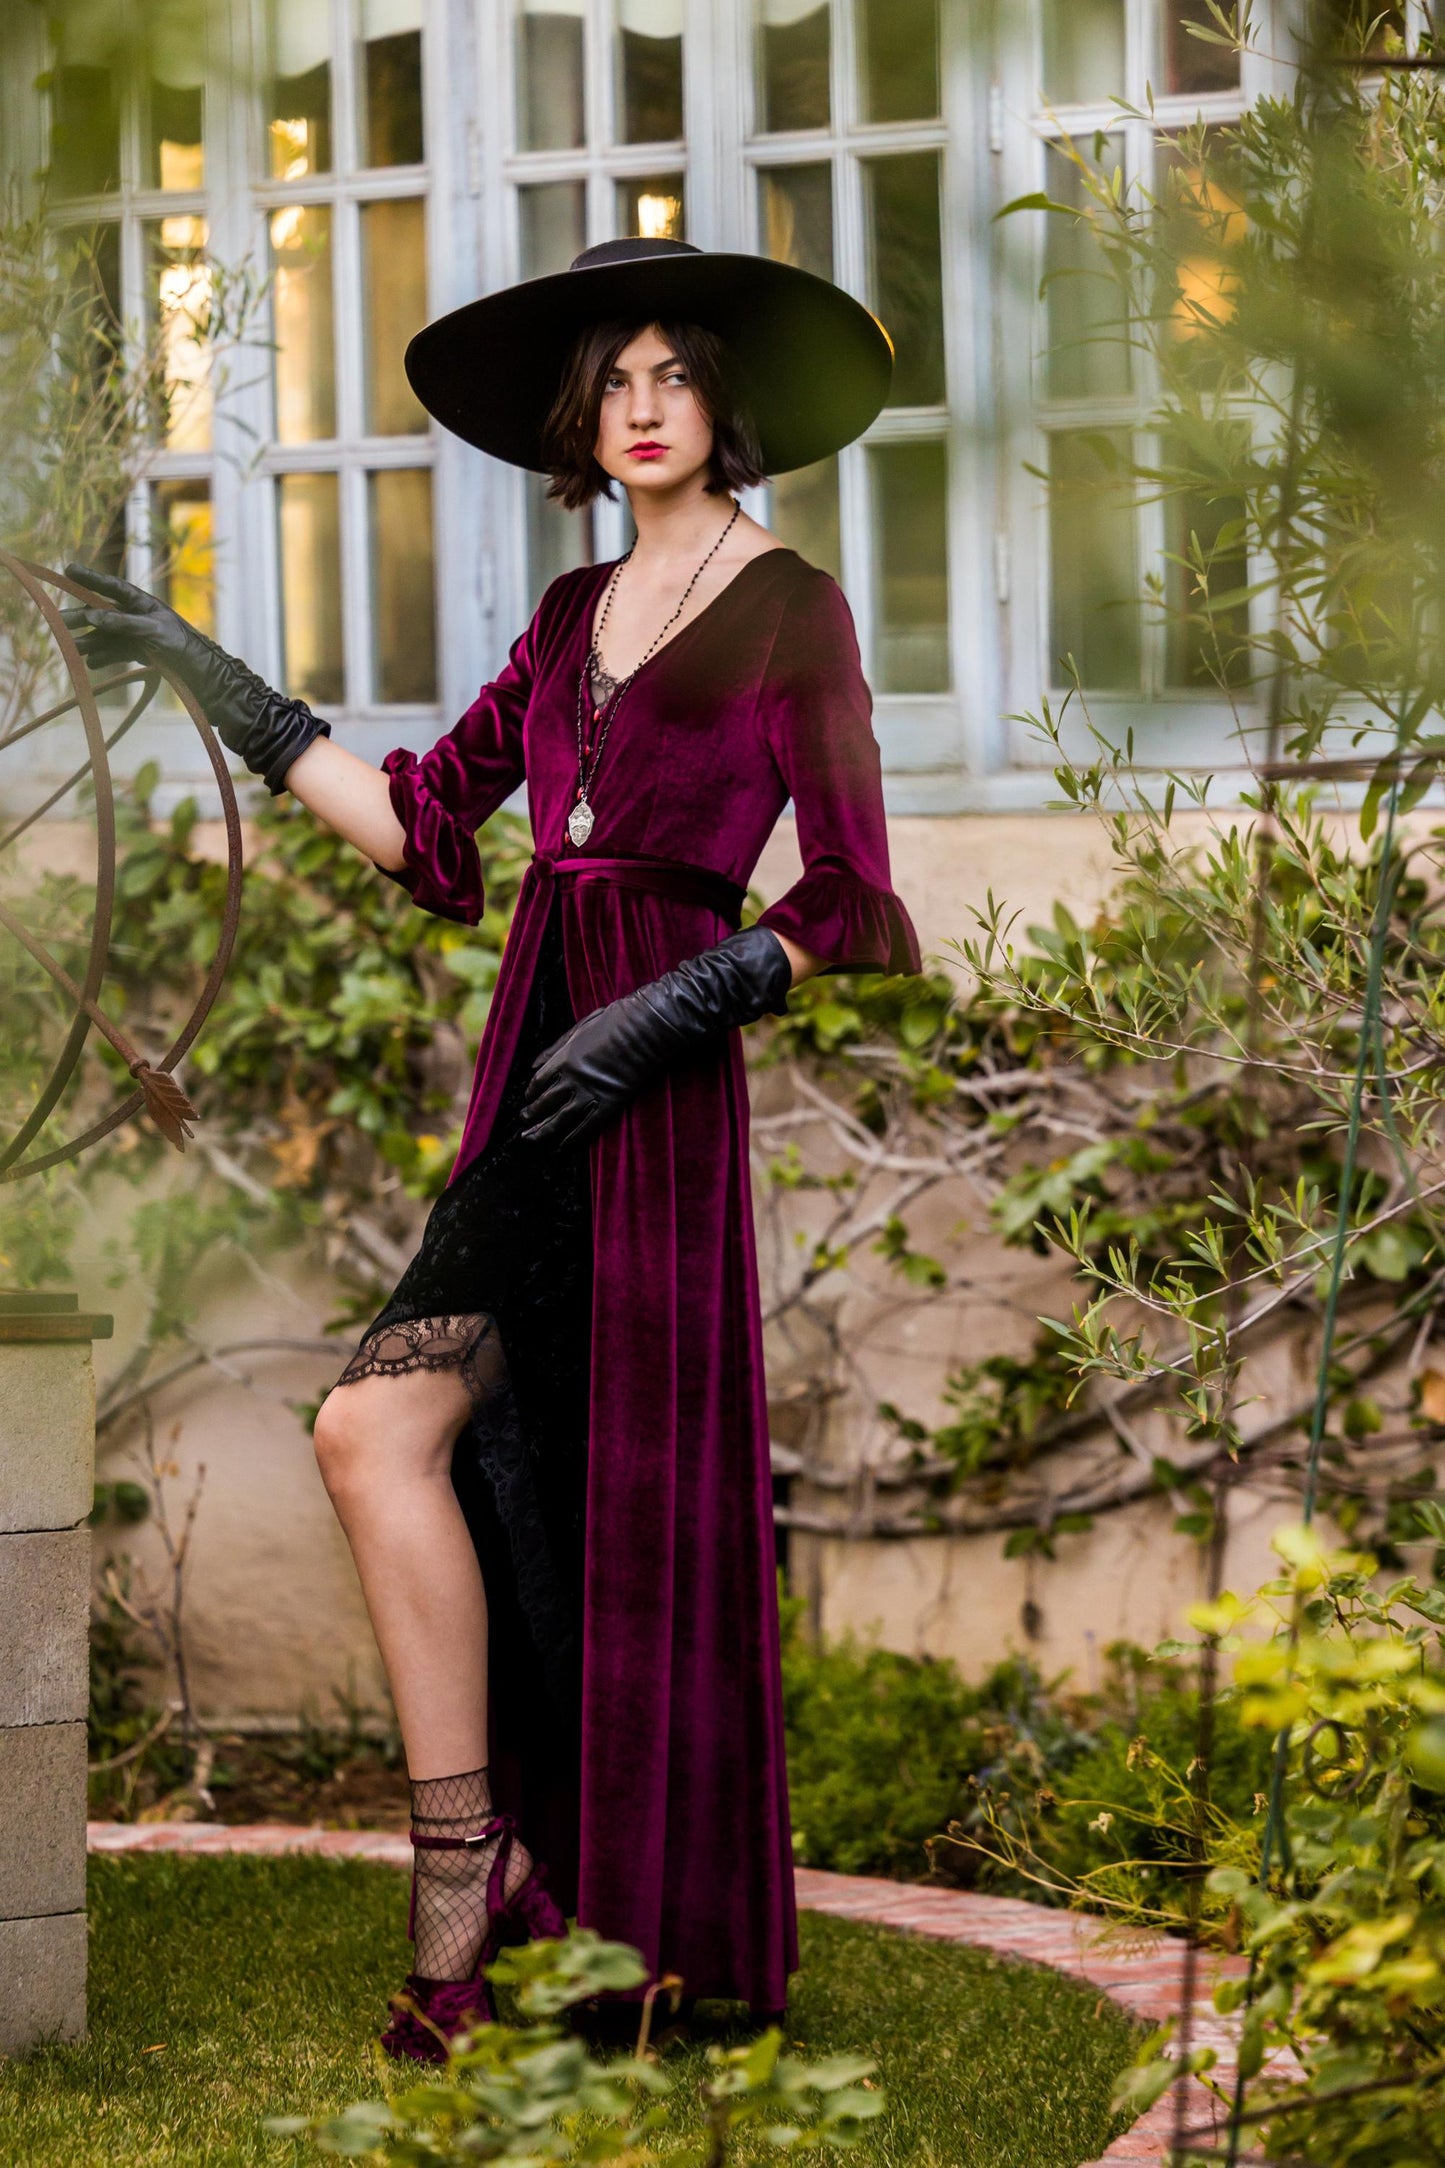 Oxblood Velvet Peignoir Dressing Gown jennafergrace handmade burgundy